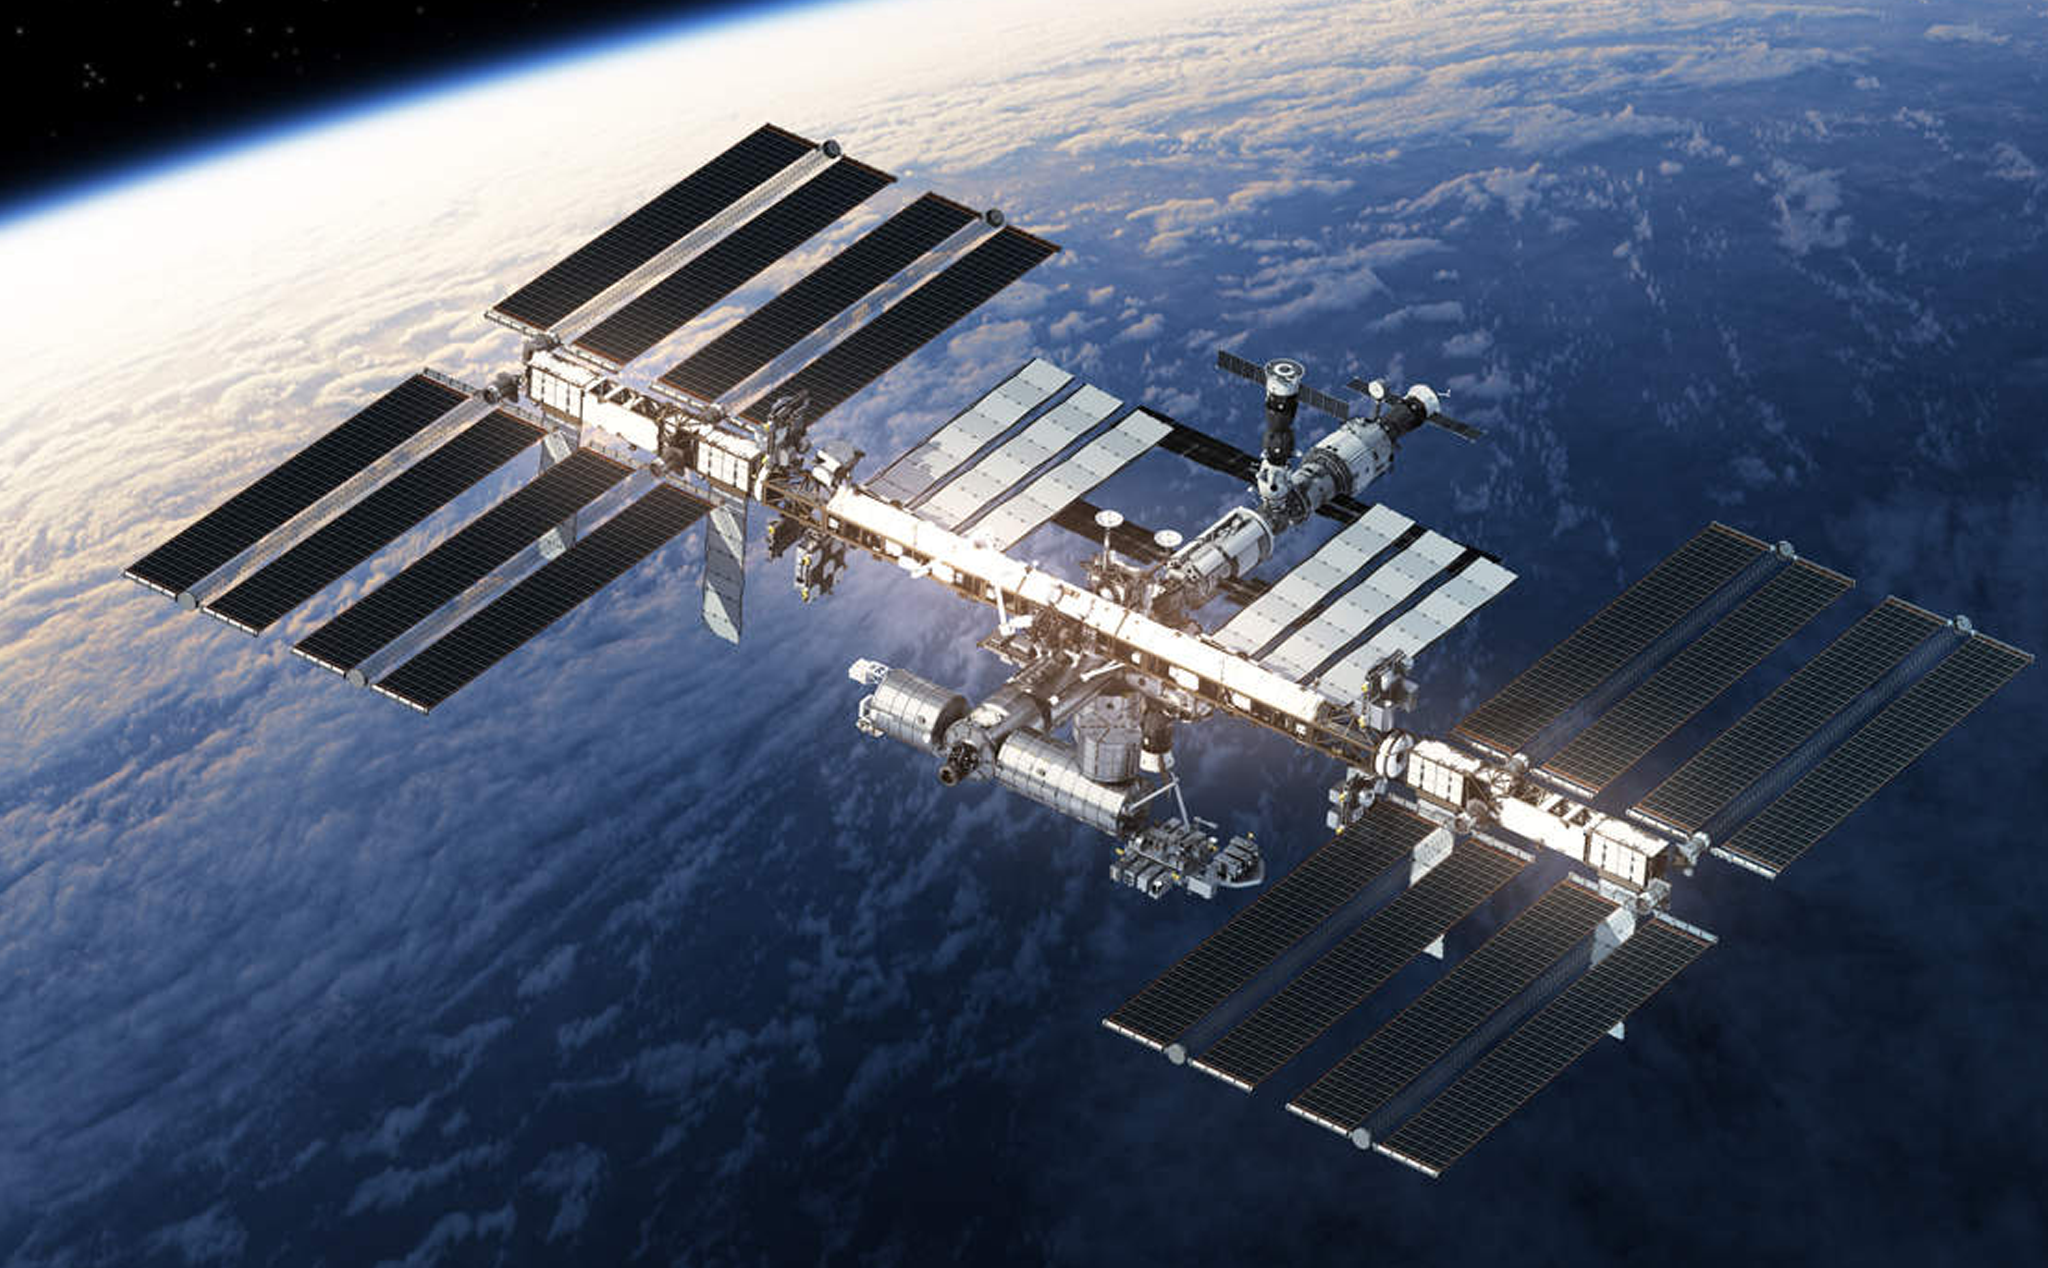 Trạm Vũ trụ Quốc tế ISS là một trong những công trình kỳ công của con người. Qua hình ảnh, bạn sẽ được chiêm ngưỡng sự kỳ diệu của nó. Hãy cùng khám phá nào!